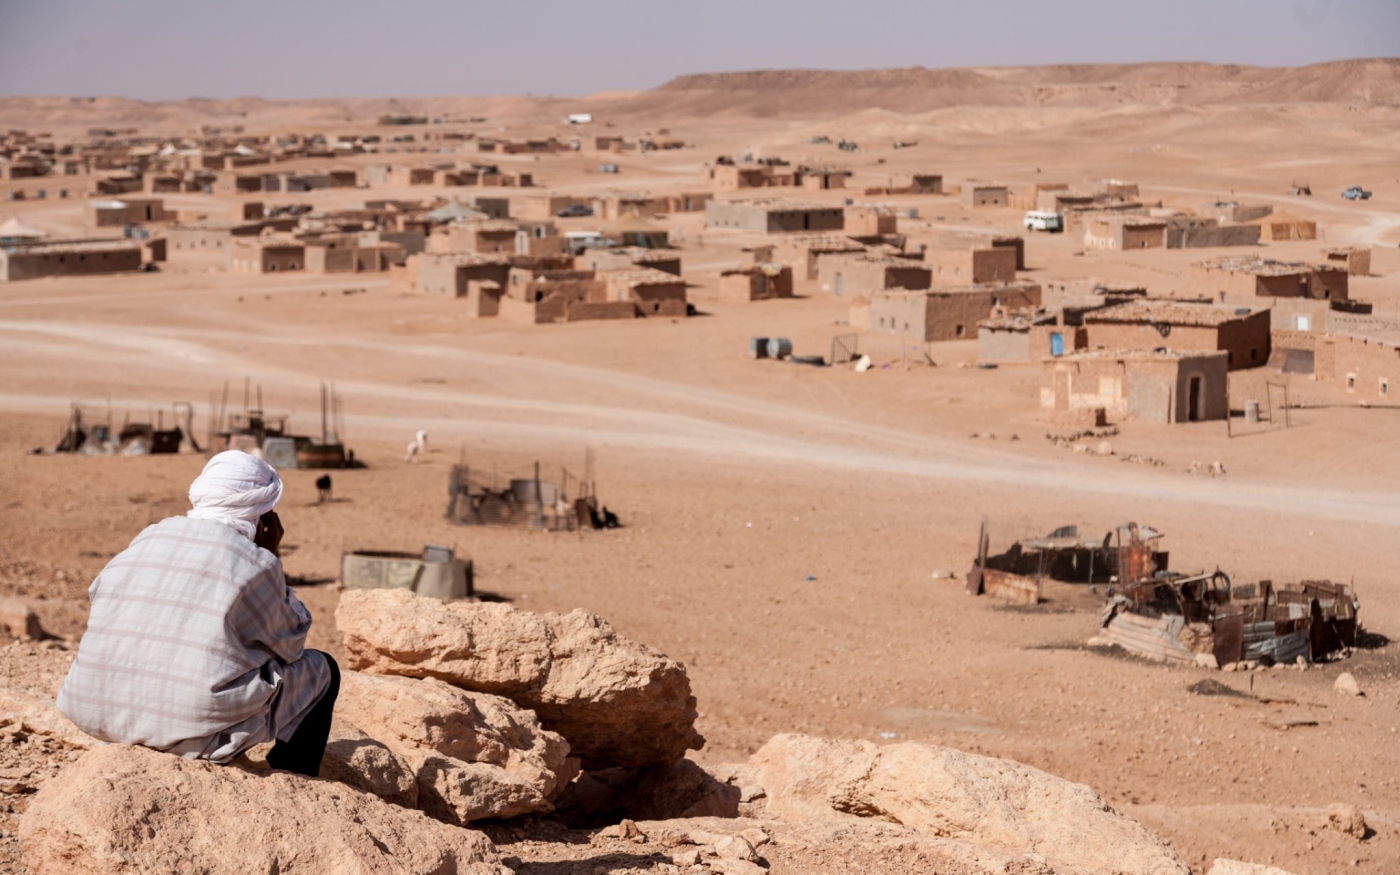 Layounne, l’un des nombreux camps de réfugiés dans le désert de l’ouest de l’Algérie (Emma Brown Photography)